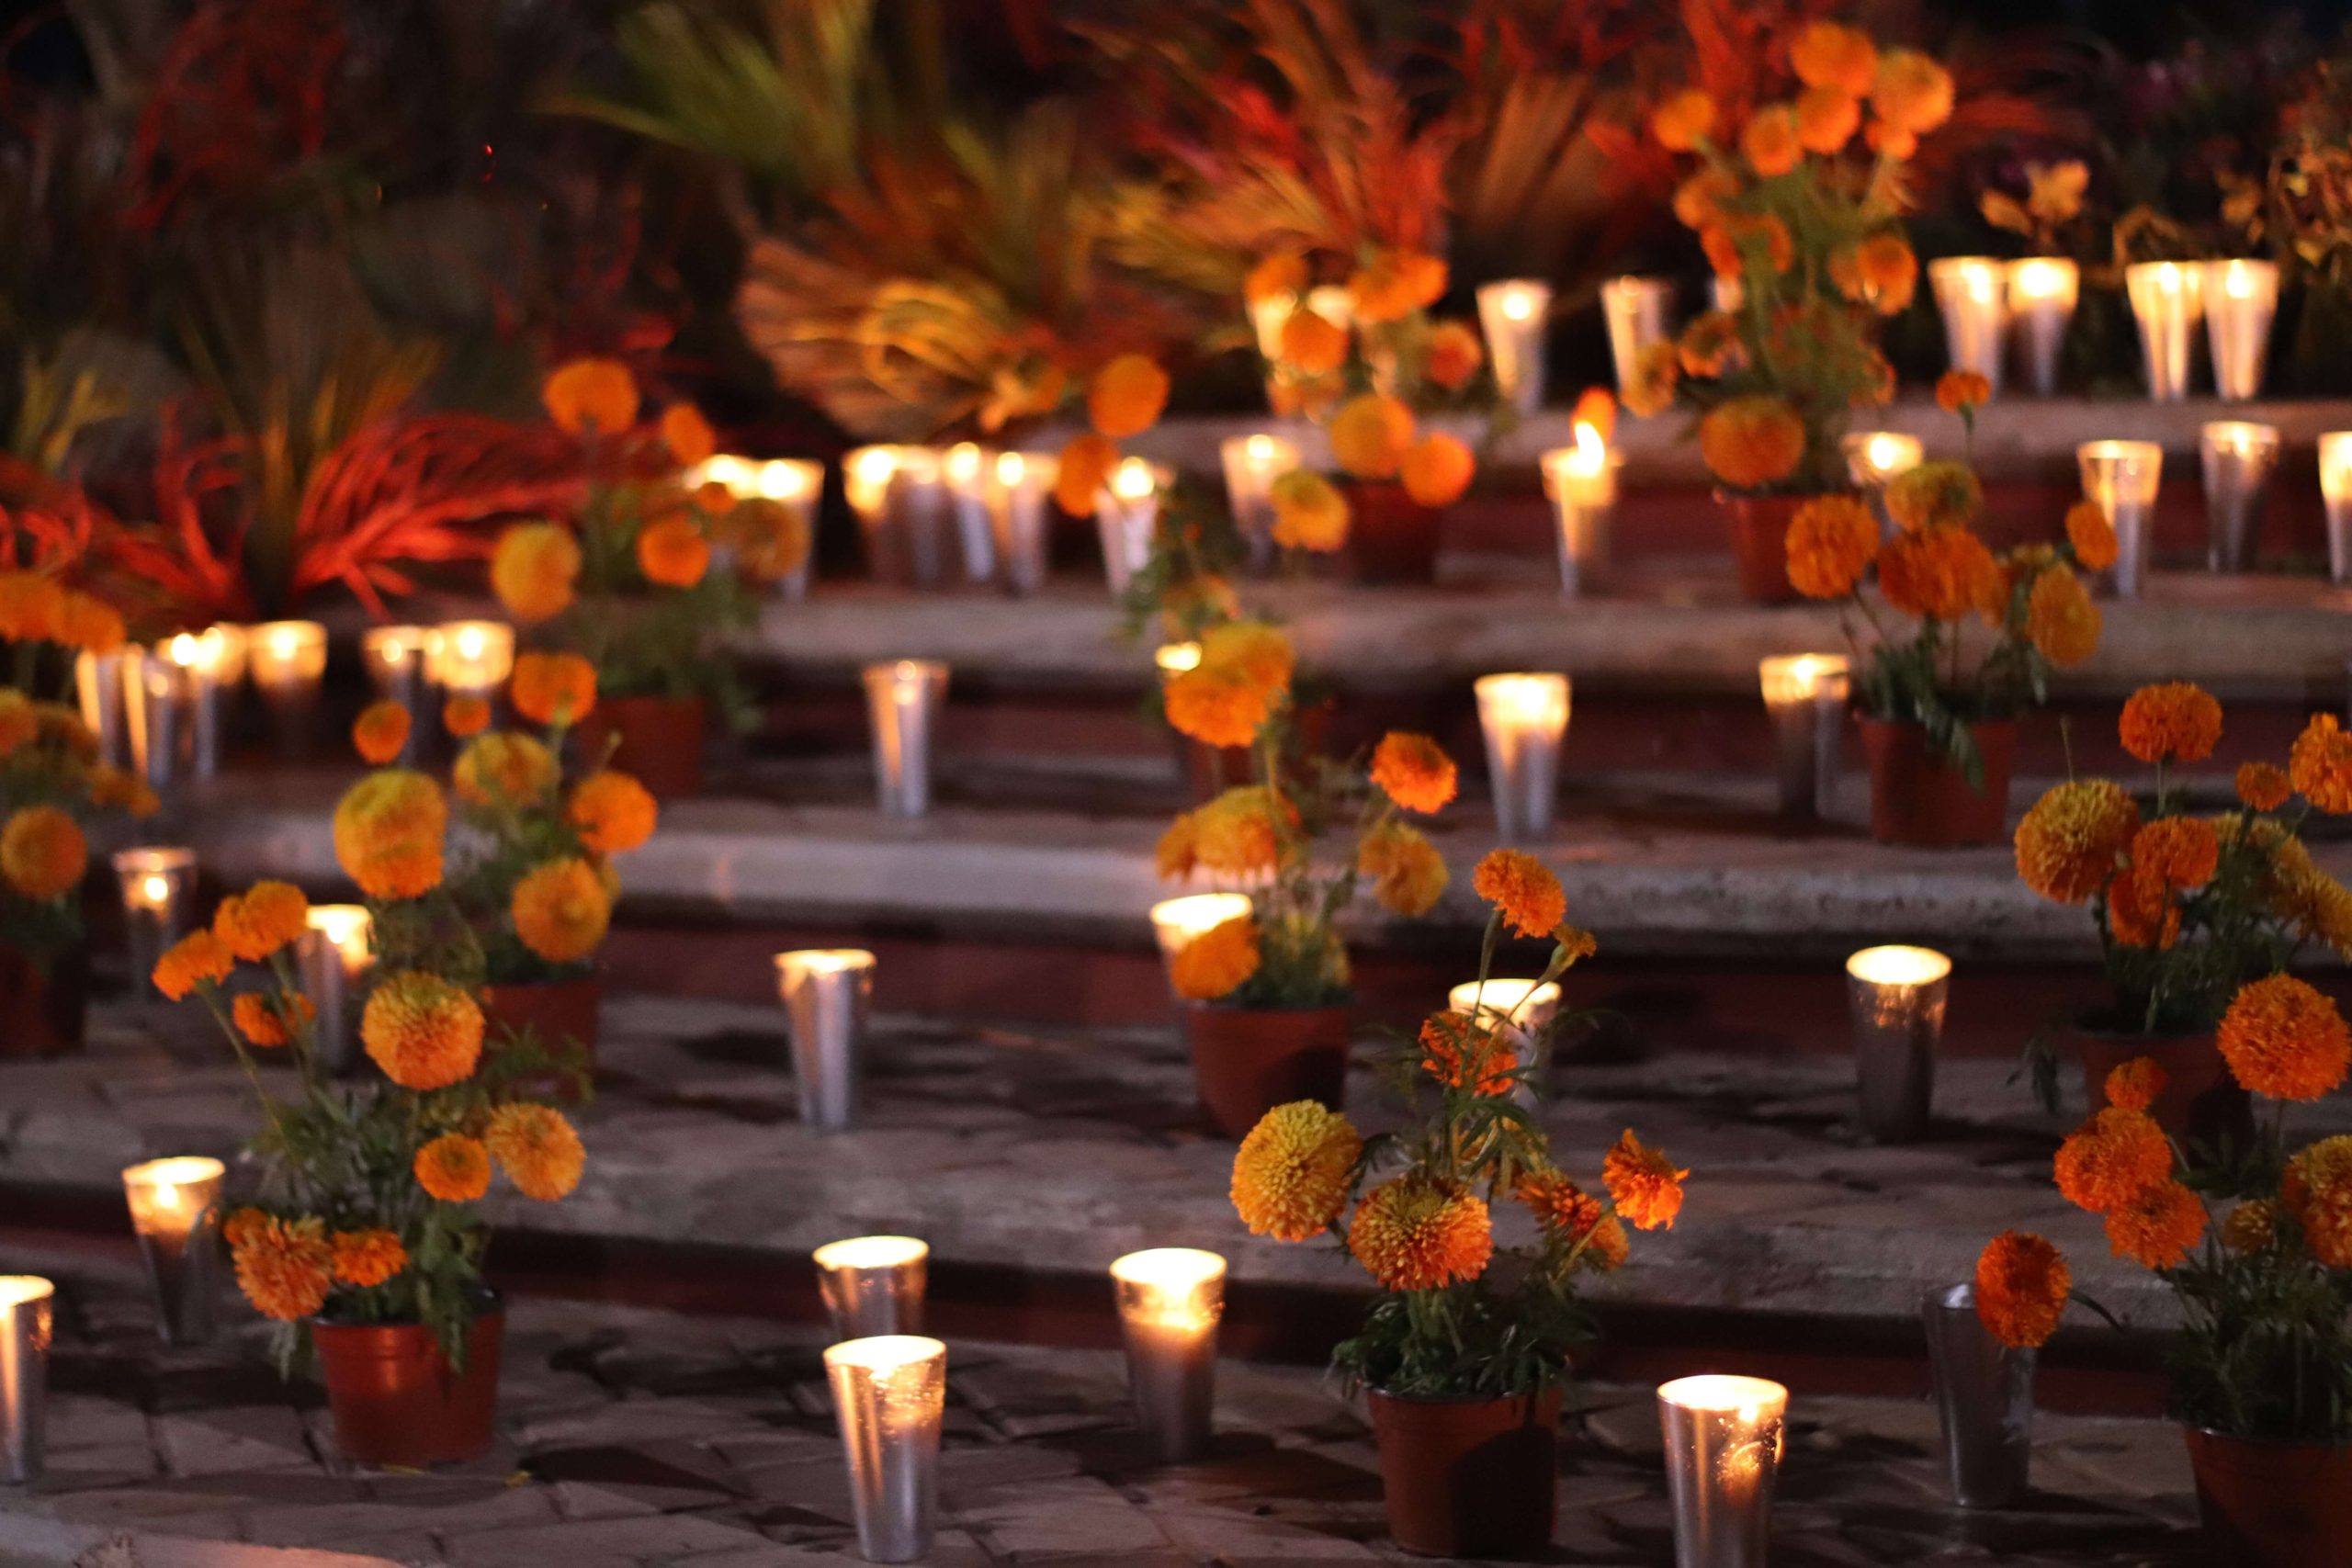 Día de Muertos en Michoacán